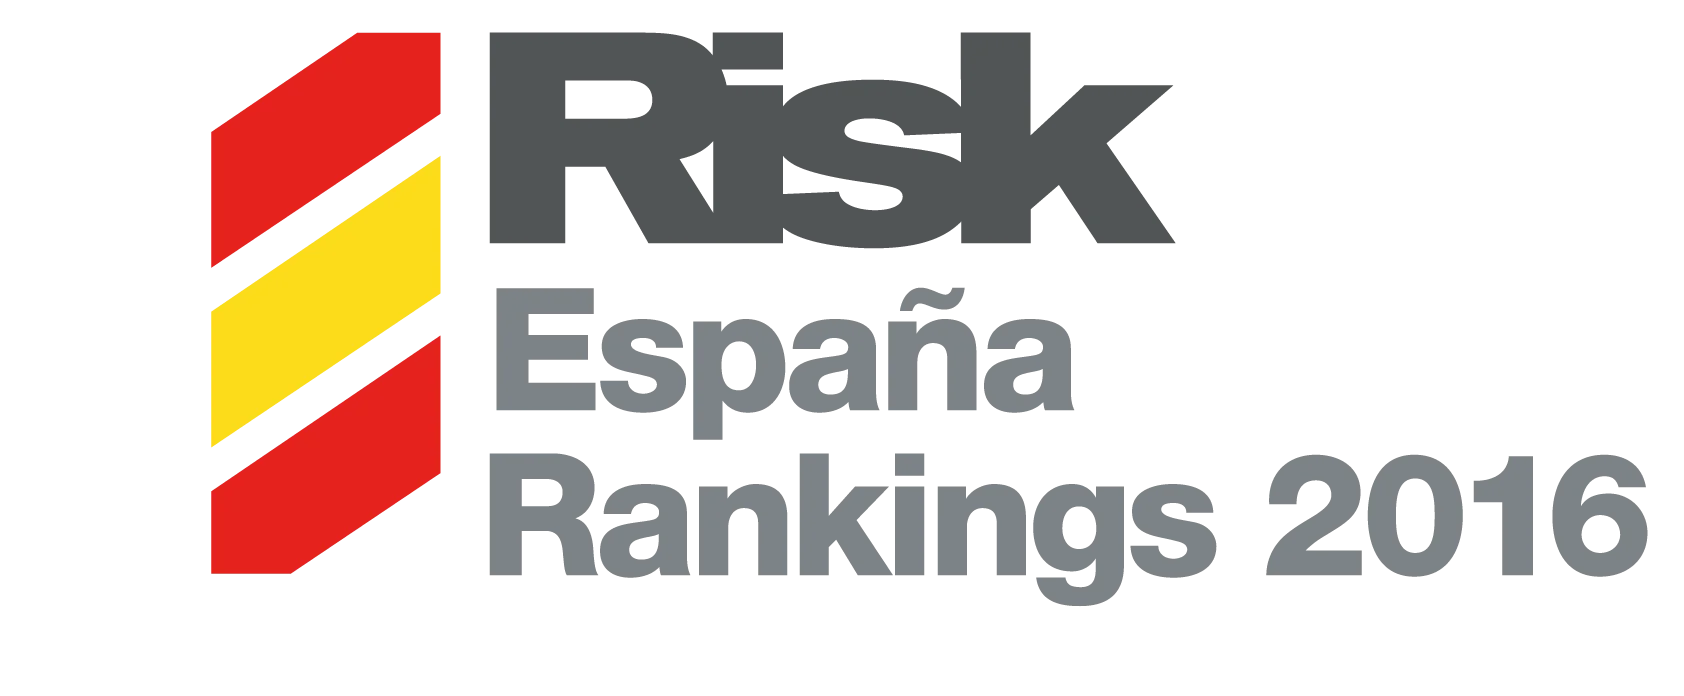 rrr16-logo-espana